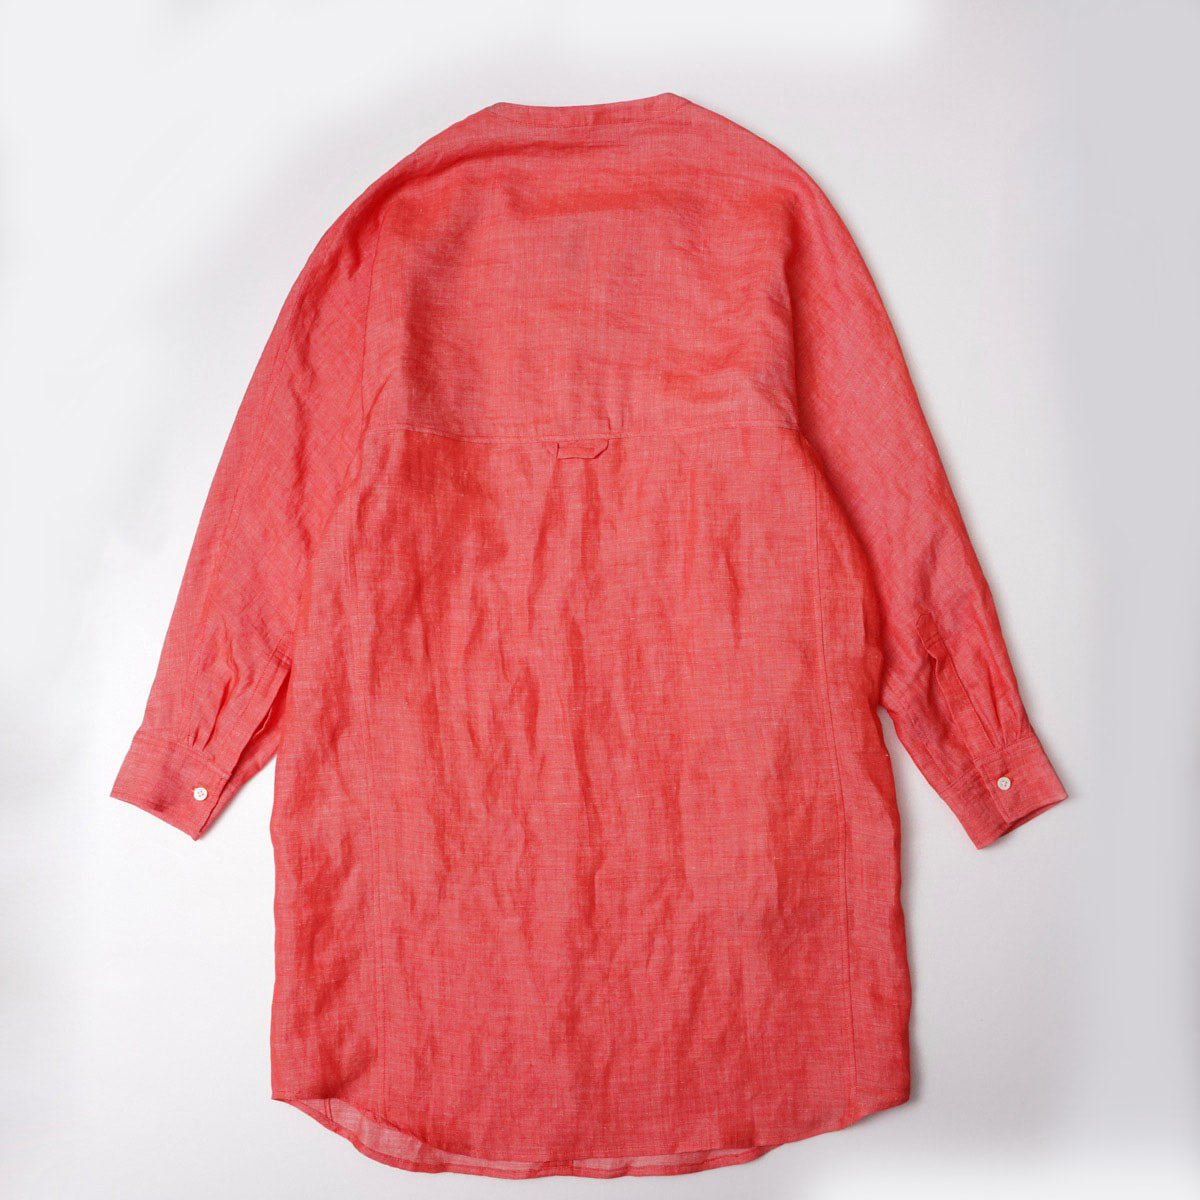 アドラーブル ピンクオレンジ リネン スキッパーワンピース ADOLUVLE ORIGINAL PINK-ORANGE LINEN LONG SLEEVE DRESS